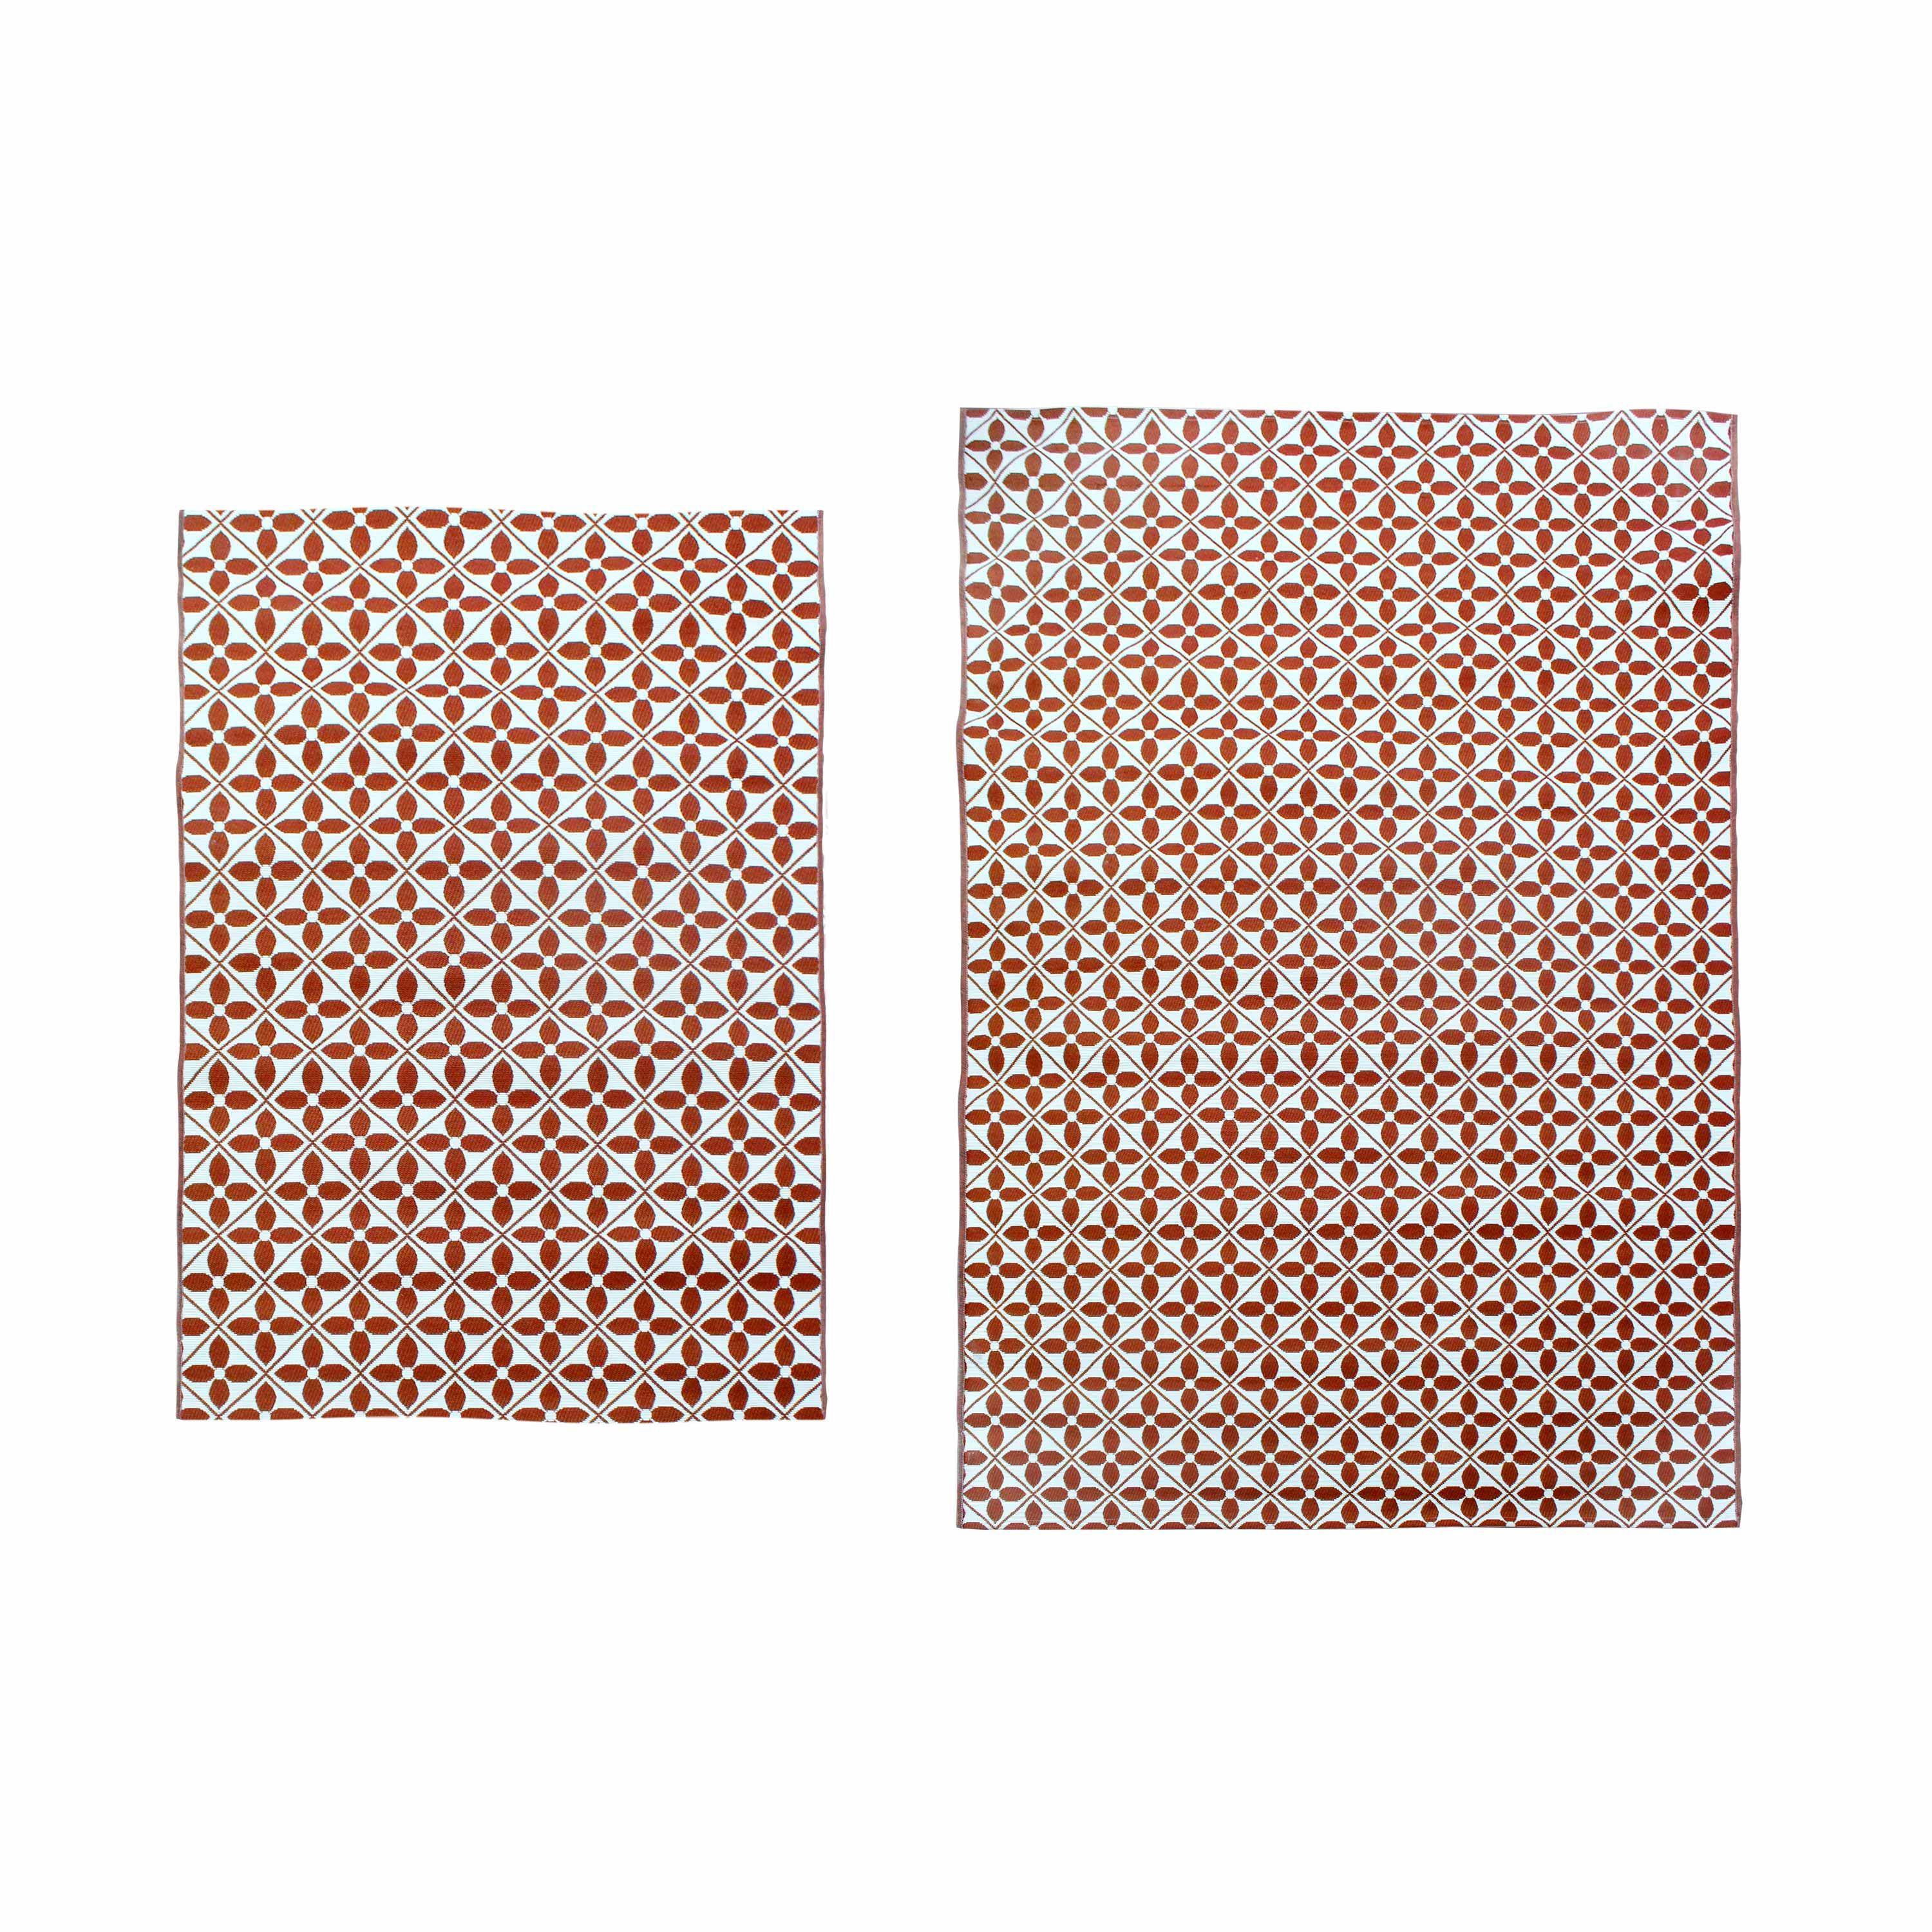 Tapis extérieur/intérieur 200 x 290 cm, motif carreaux de ciment, traité anti UV, toutes saisons Photo4